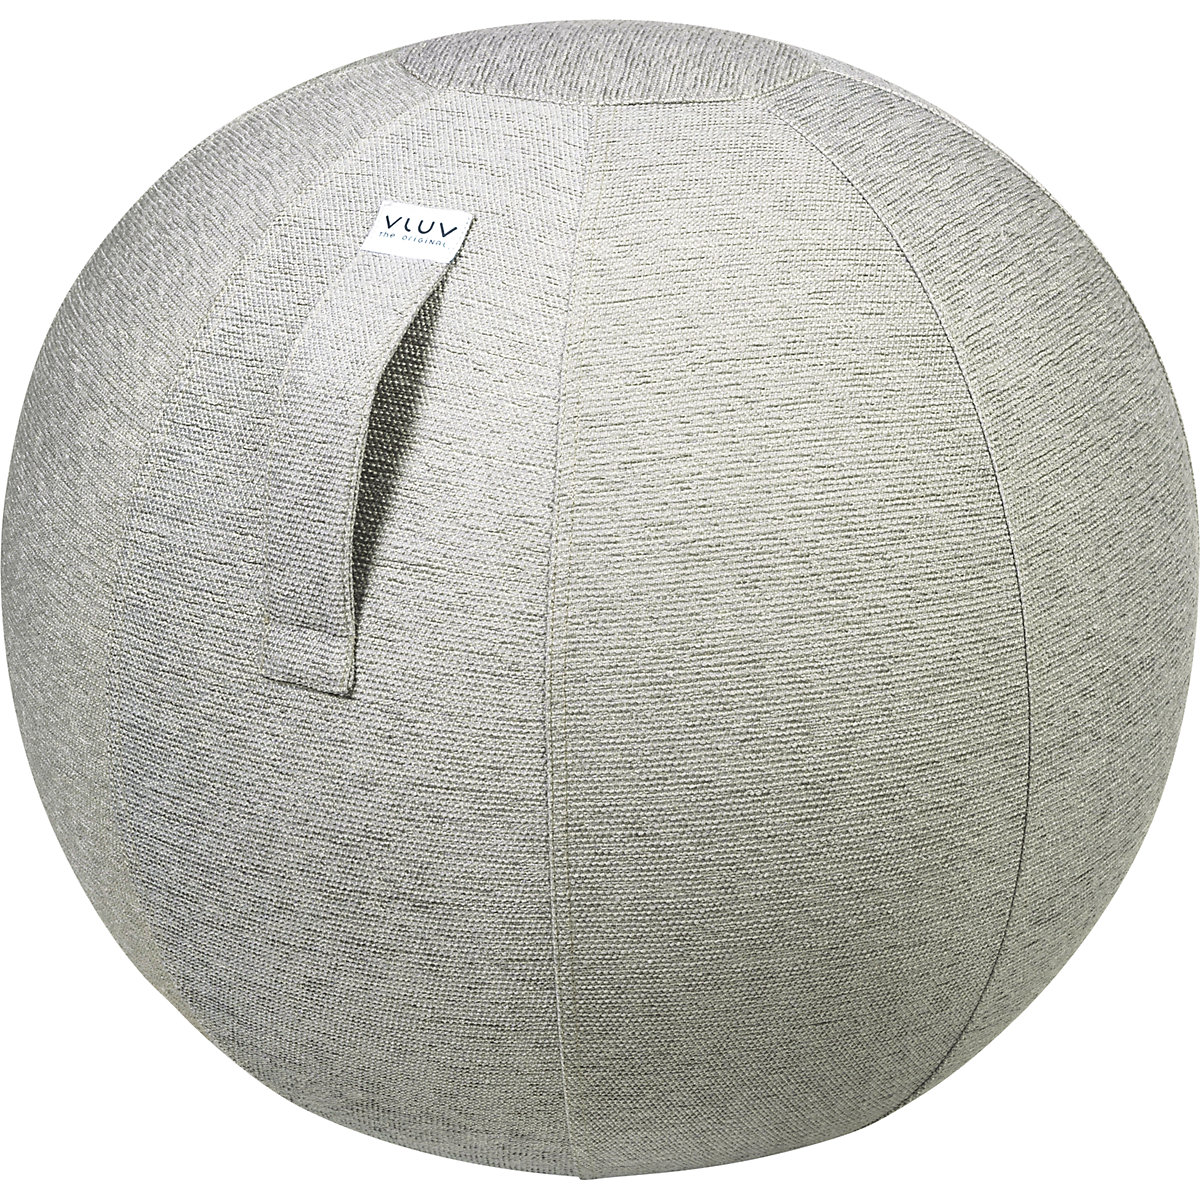 Ballon suisse STOV – VLUV, modèle tissu, 600 – 650 mm, gris ciment-8